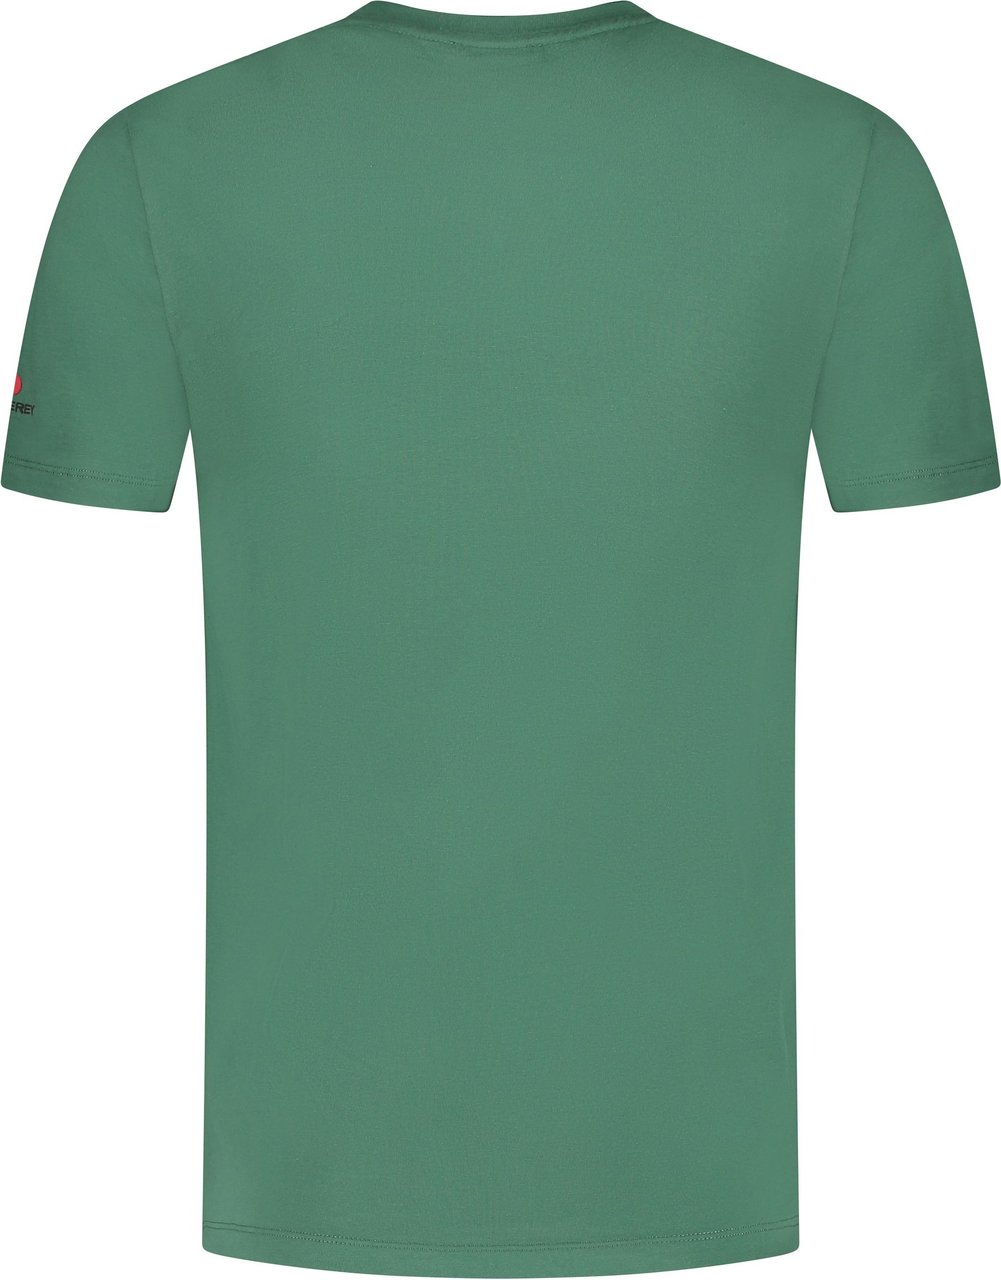 Peuterey T-shirt Groen Groen